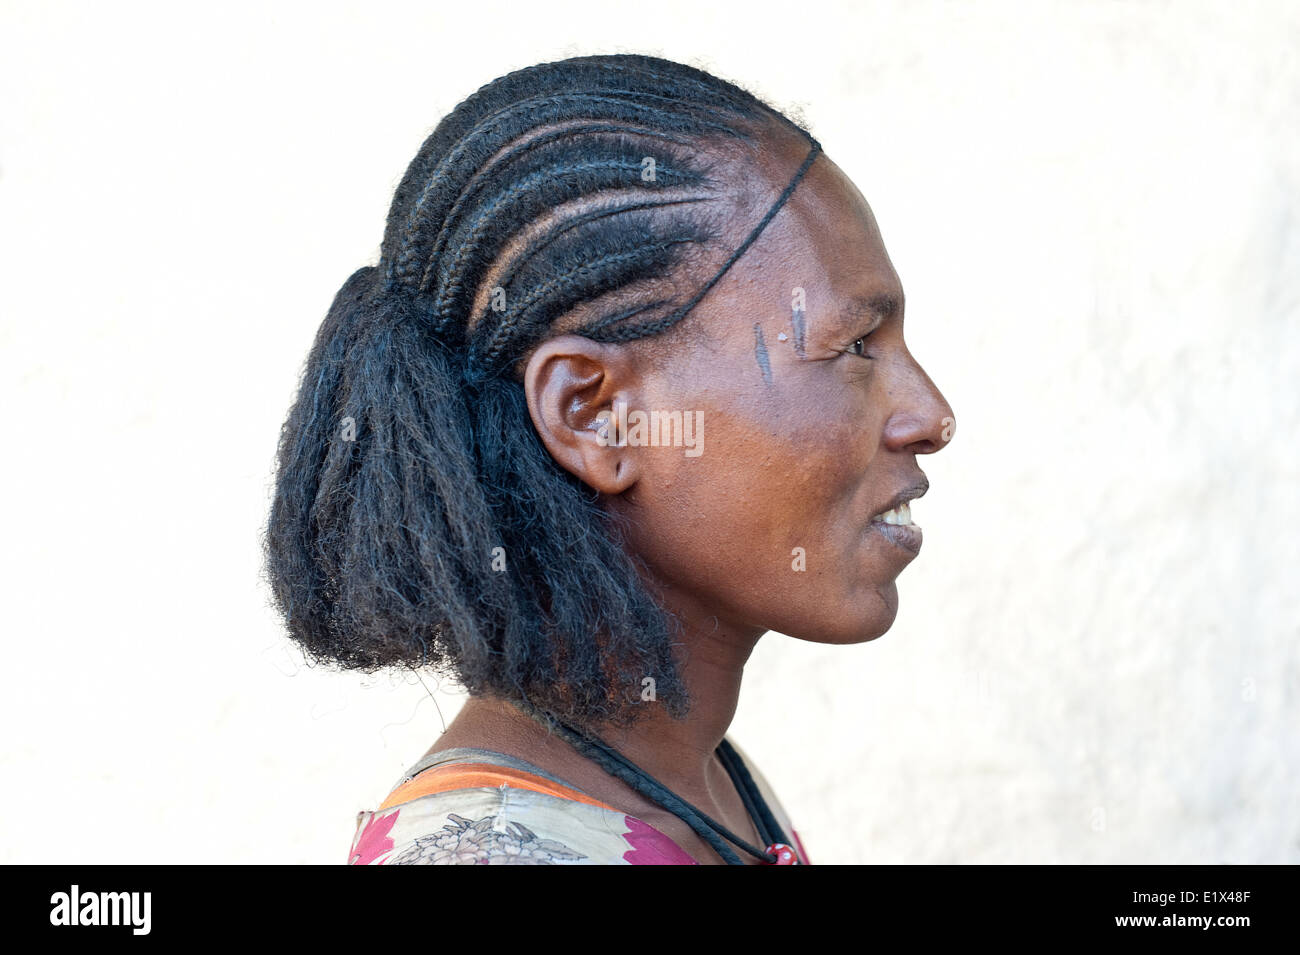 Vista de perfil de una mujer del estado de Tigray con el tradicional estilo de peinado ( Etiopía) Foto de stock